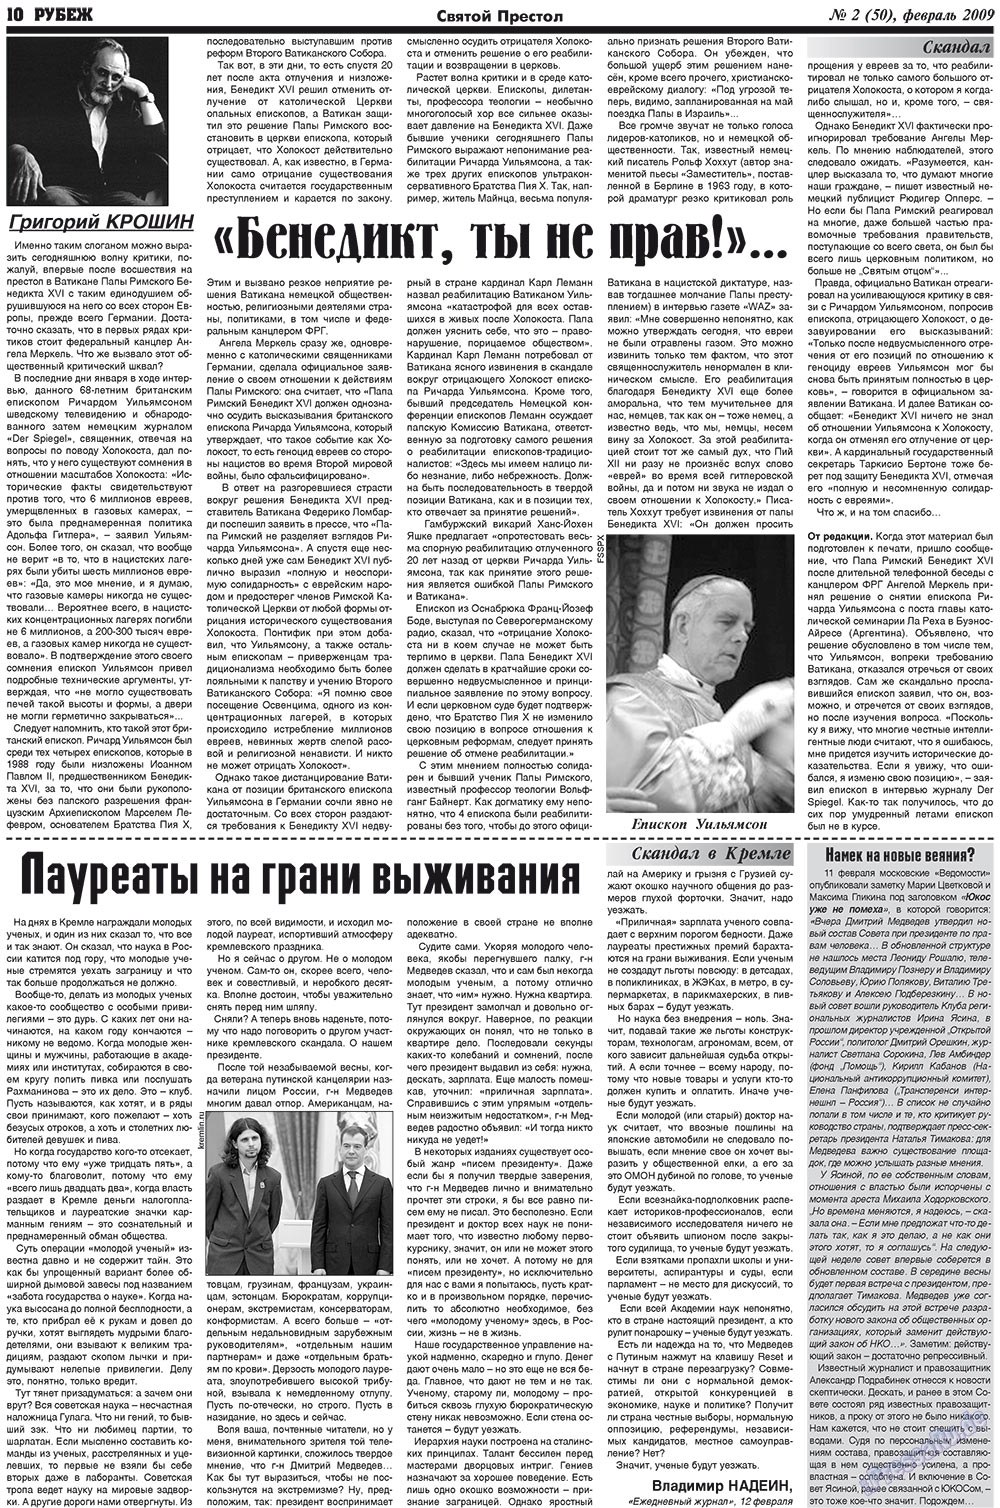 Рубеж (газета). 2009 год, номер 2, стр. 10